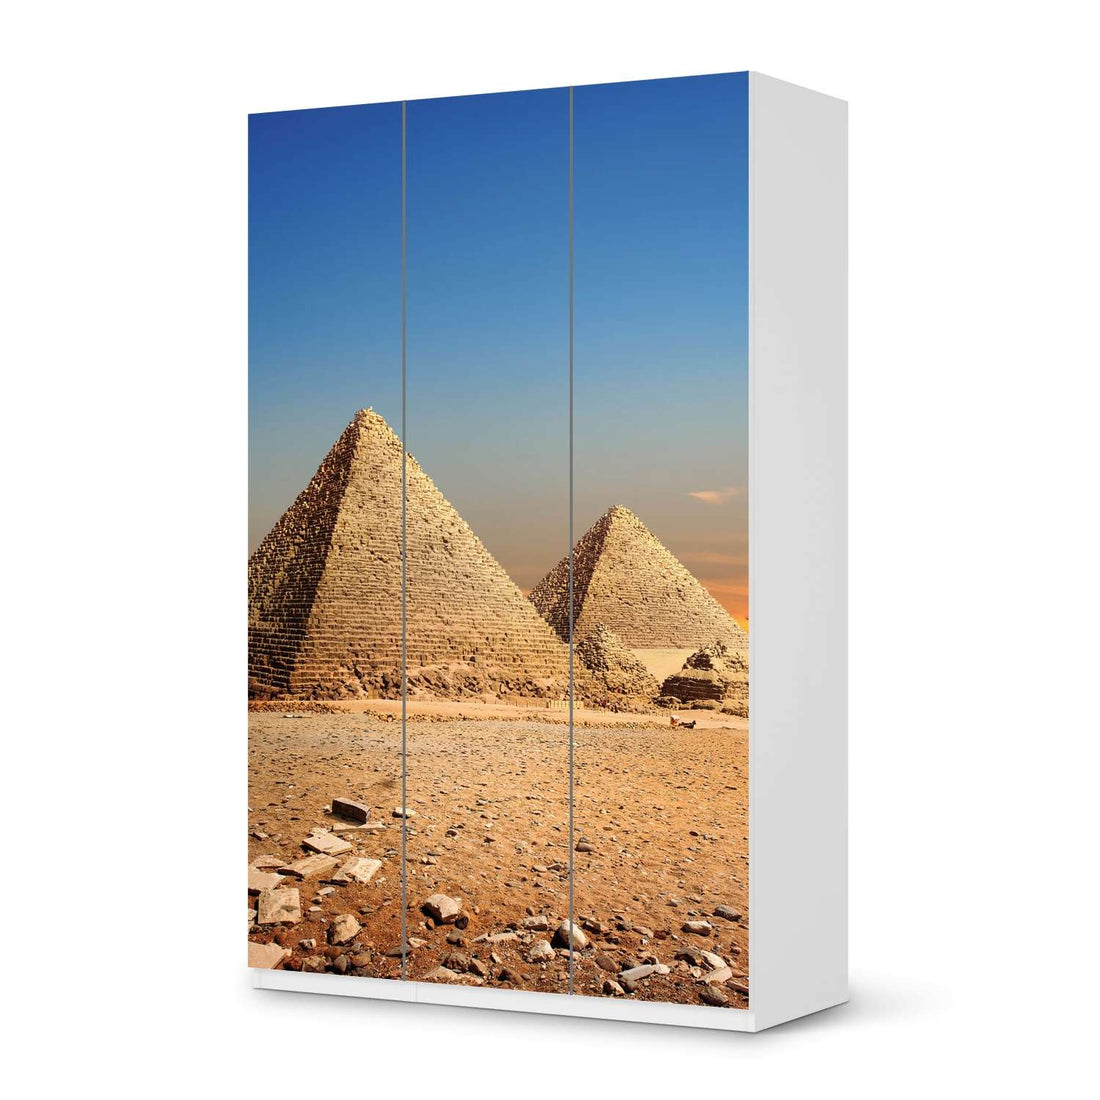 Selbstklebende Folie Pyramids - IKEA Pax Schrank 236 cm Höhe - 3 Türen - weiss